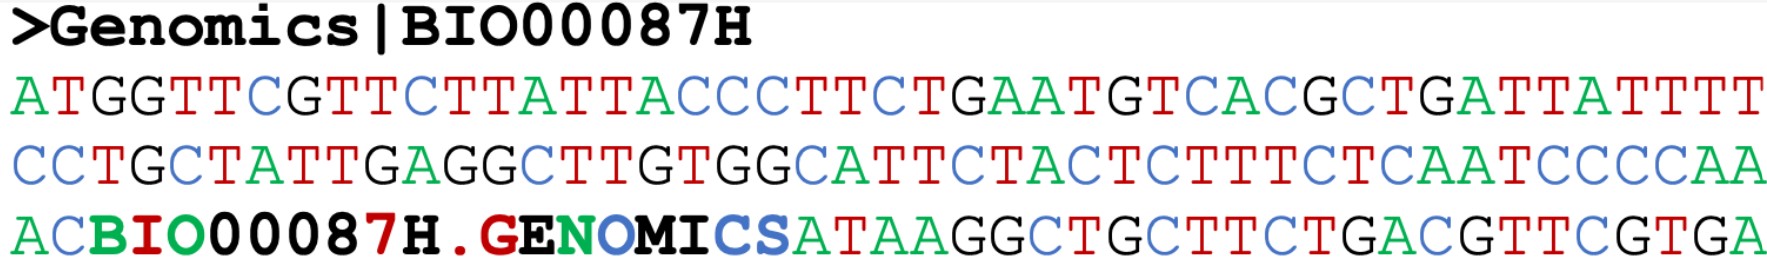 Genomics3 banner